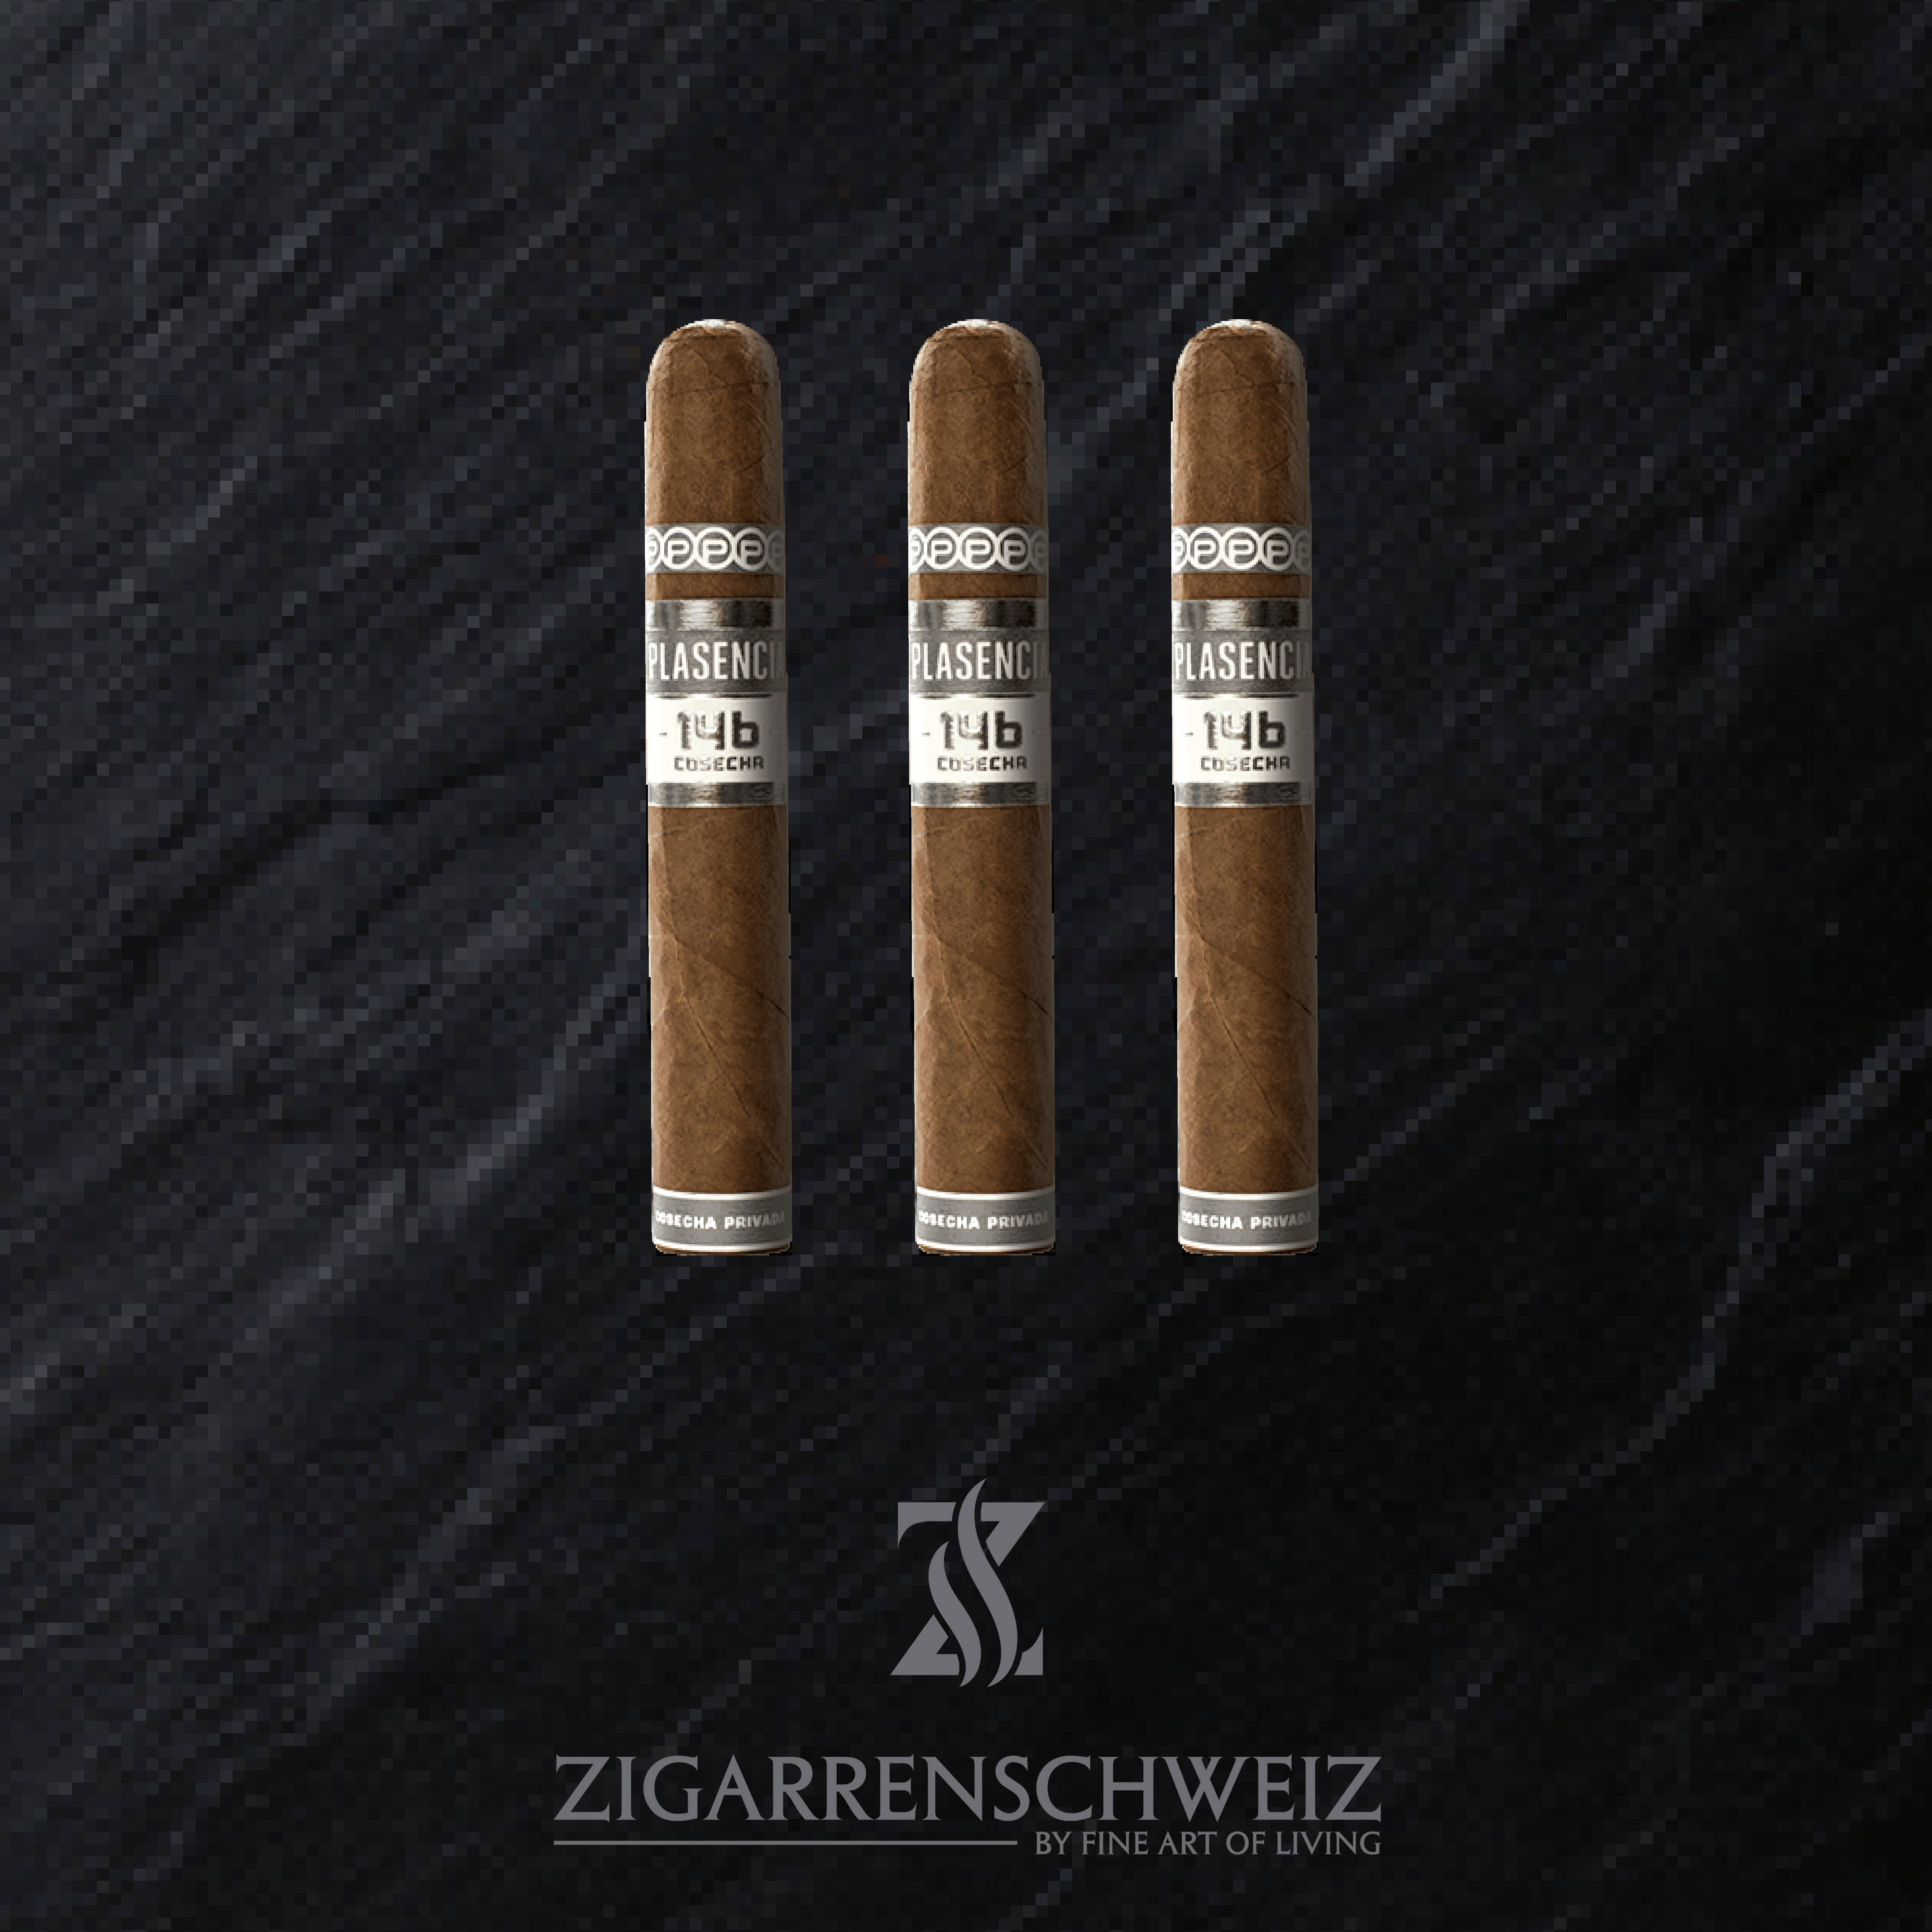 3er Etui Plasencia Cosecha 146 San Luis Zigarren im Toro Format